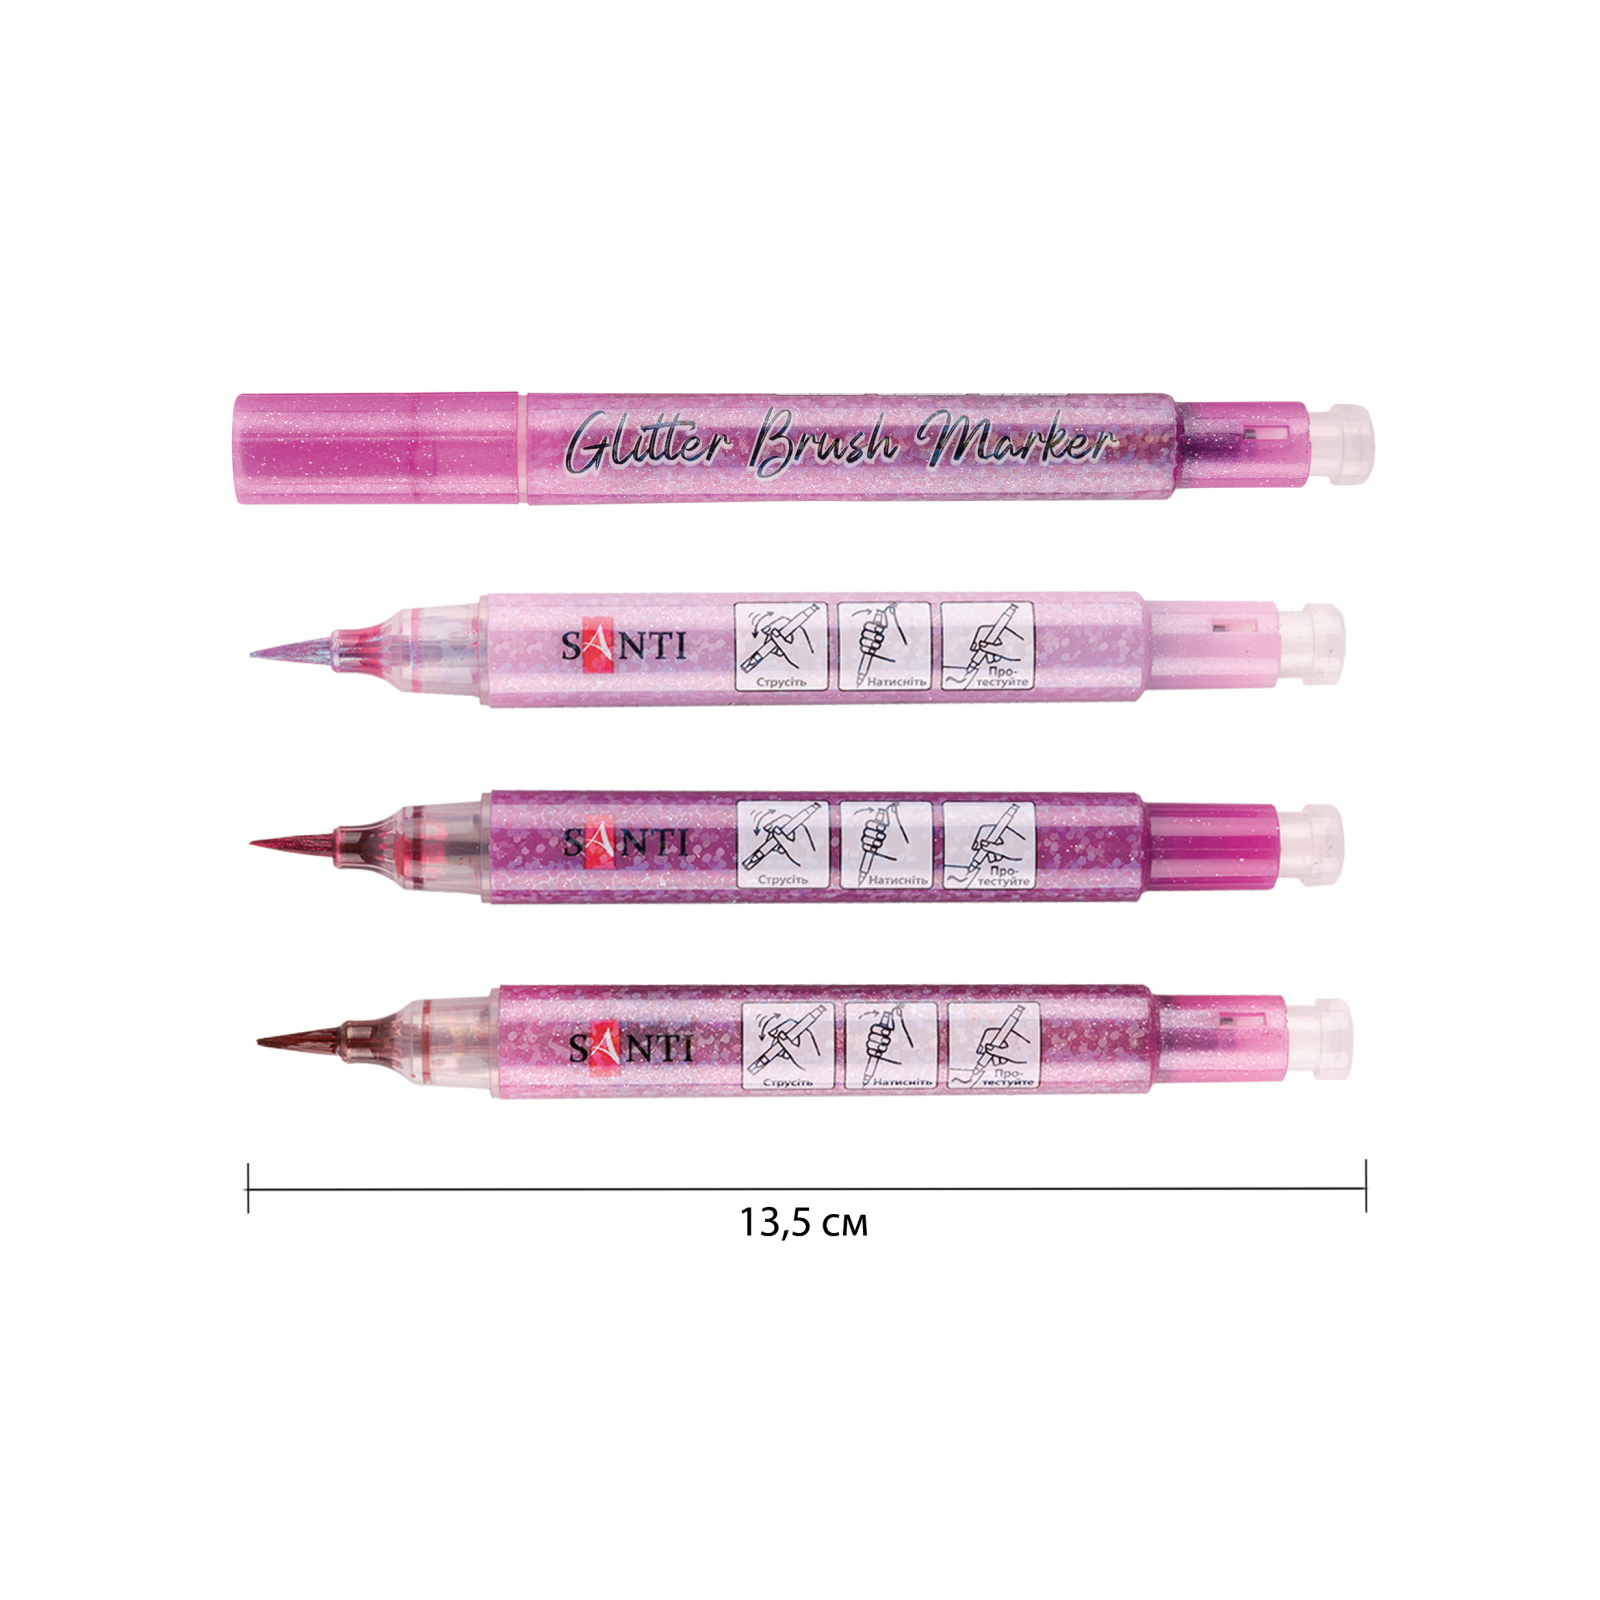 Художественный маркер Santi набор акварельных Glitter Brush оттенки розового 3 шт (390773)